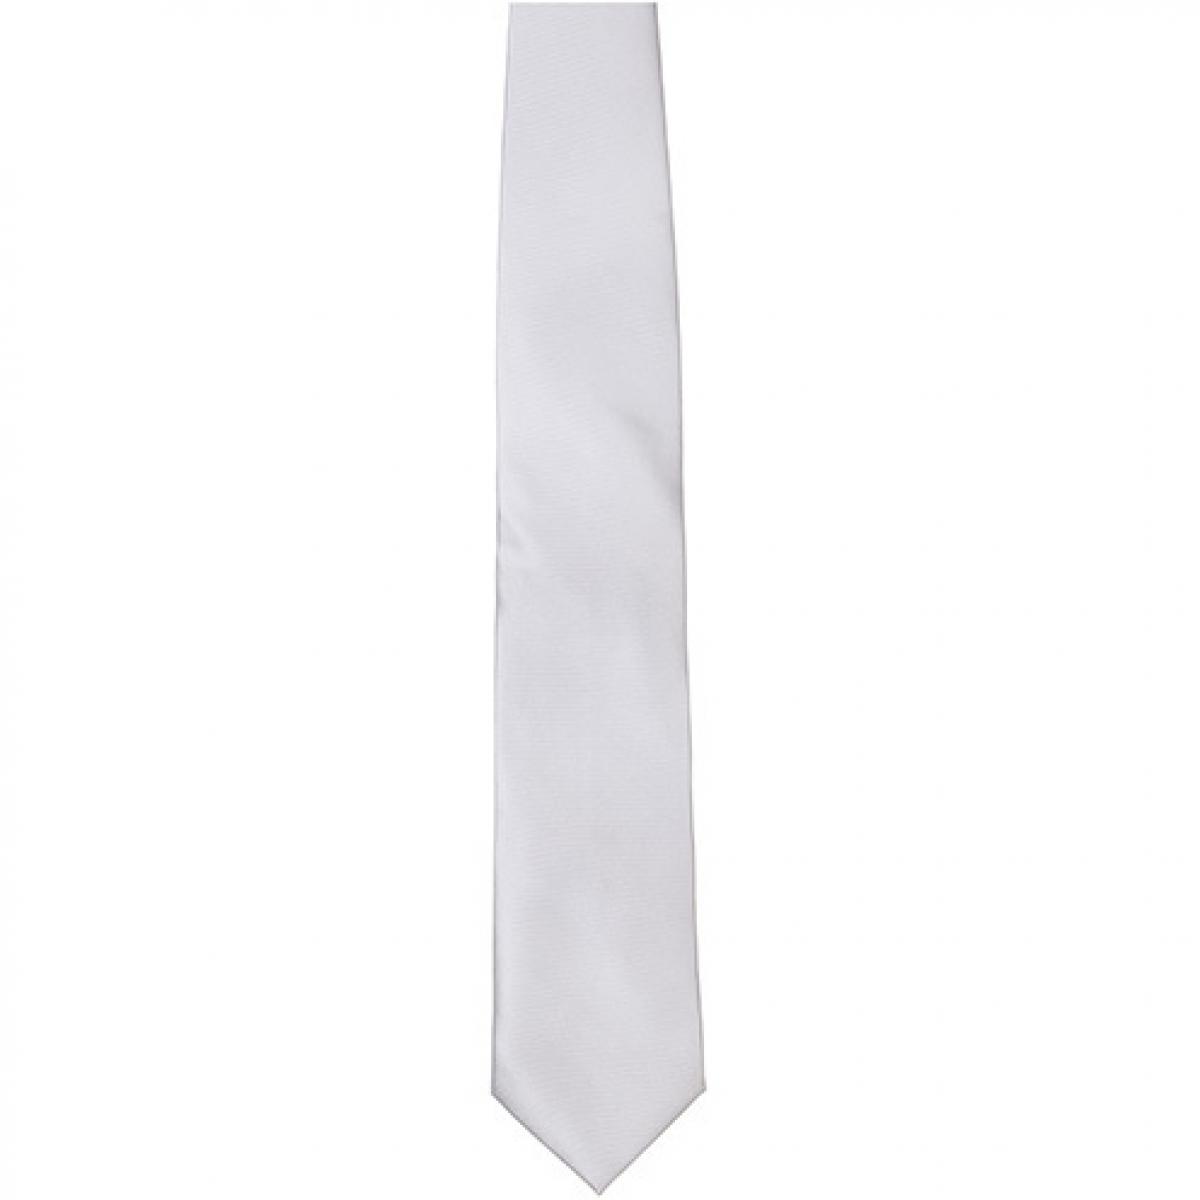 Hersteller: TYTO Herstellernummer: TT901 Artikelbezeichnung: Satin Tie / 144 x 8,5cm /  Zu 100% von Hand genäht Farbe: White